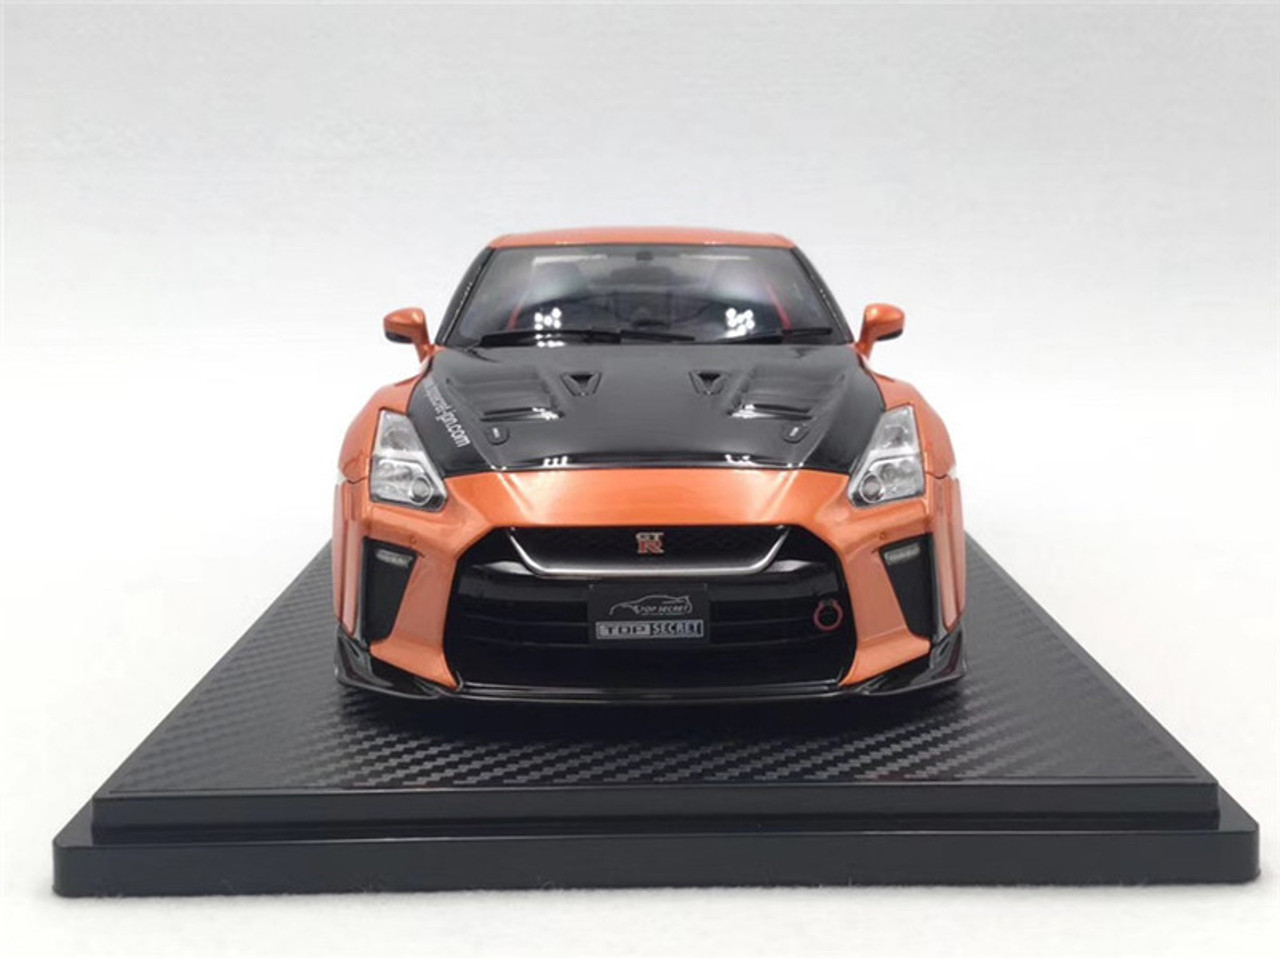 1/18 IG Ignition Model Nissan Top Secret GT-R GTR R35 (Orange) Resin Car Model